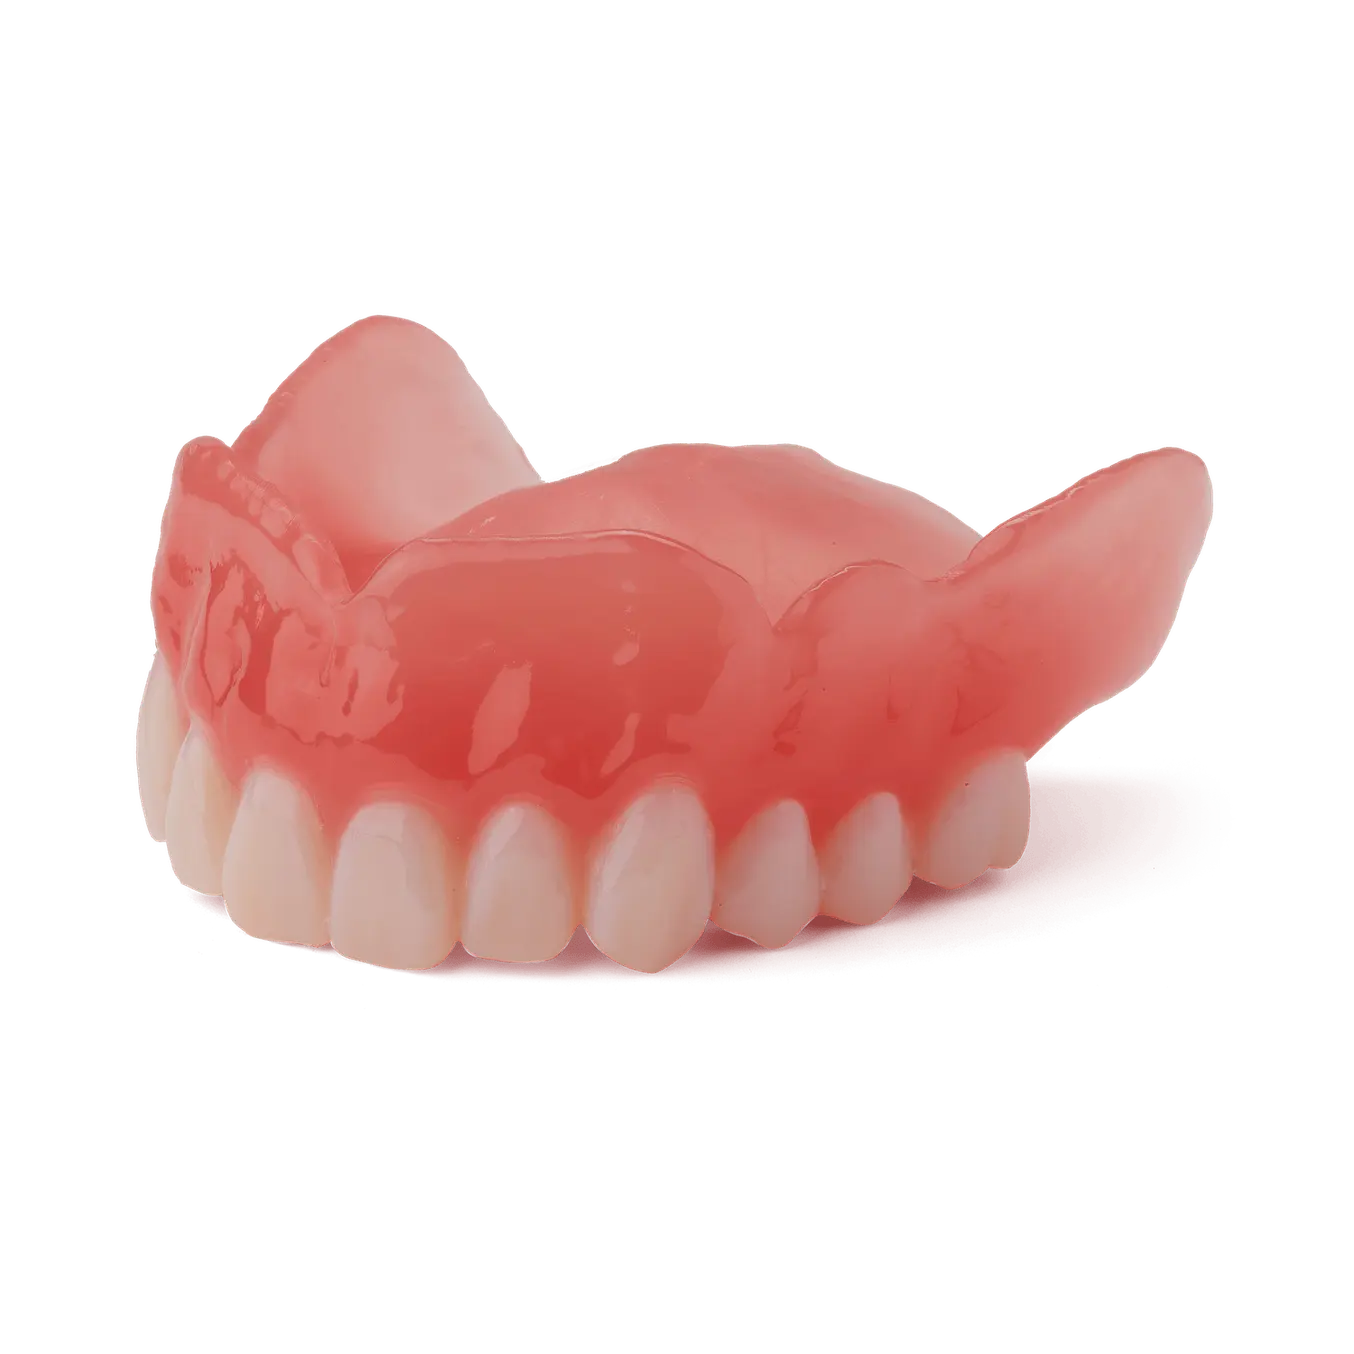 3D printed denture